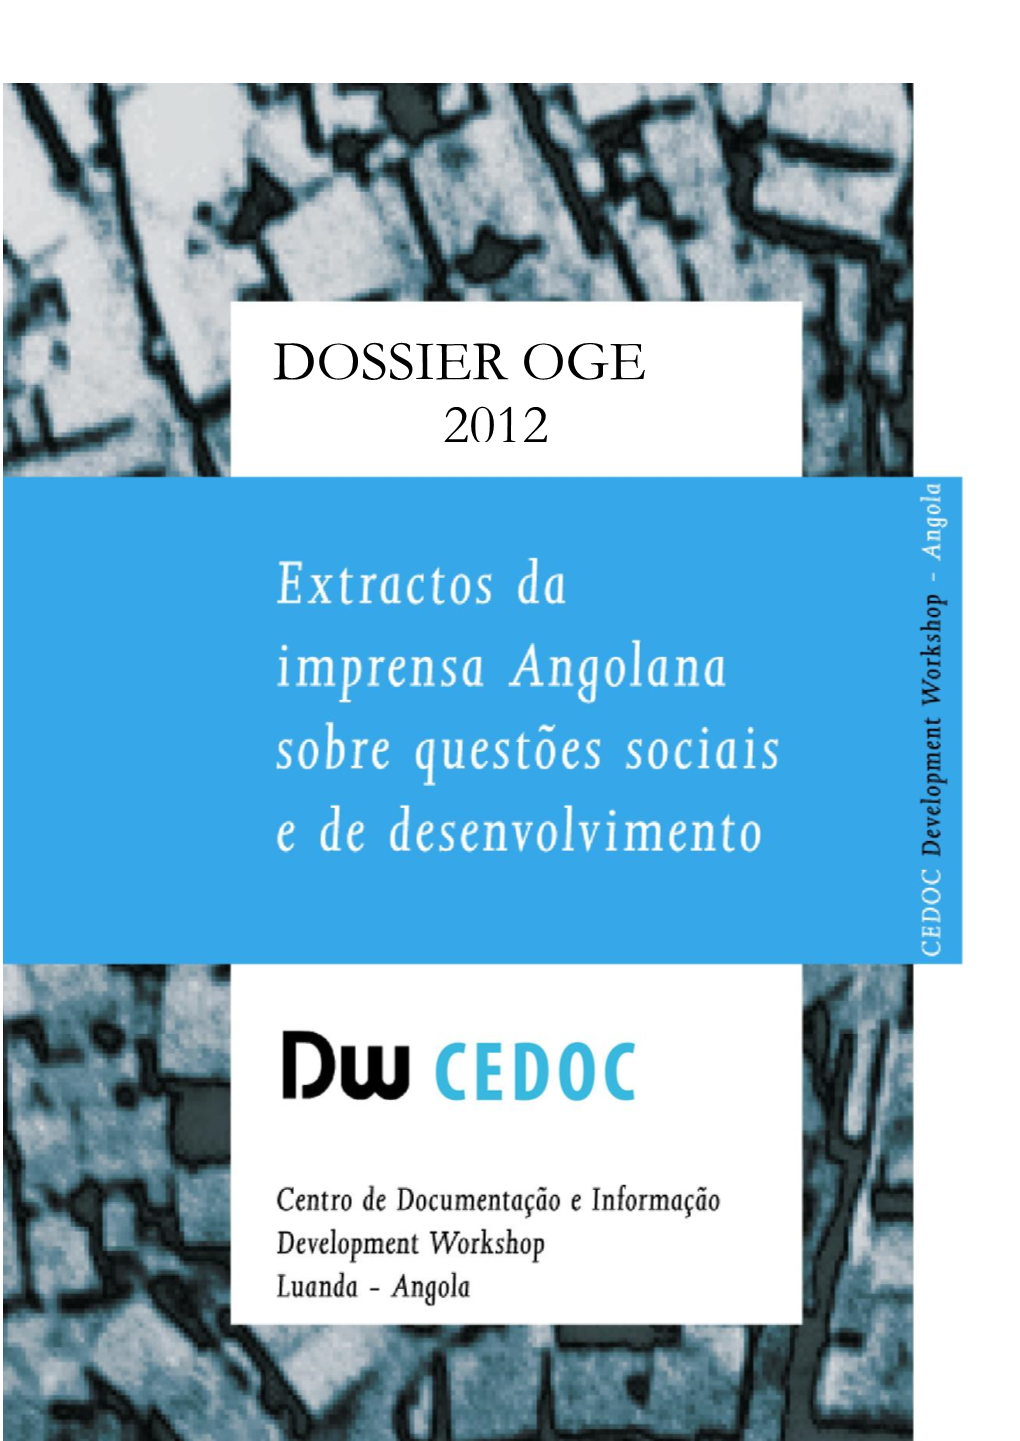 Dossier Oge 2012